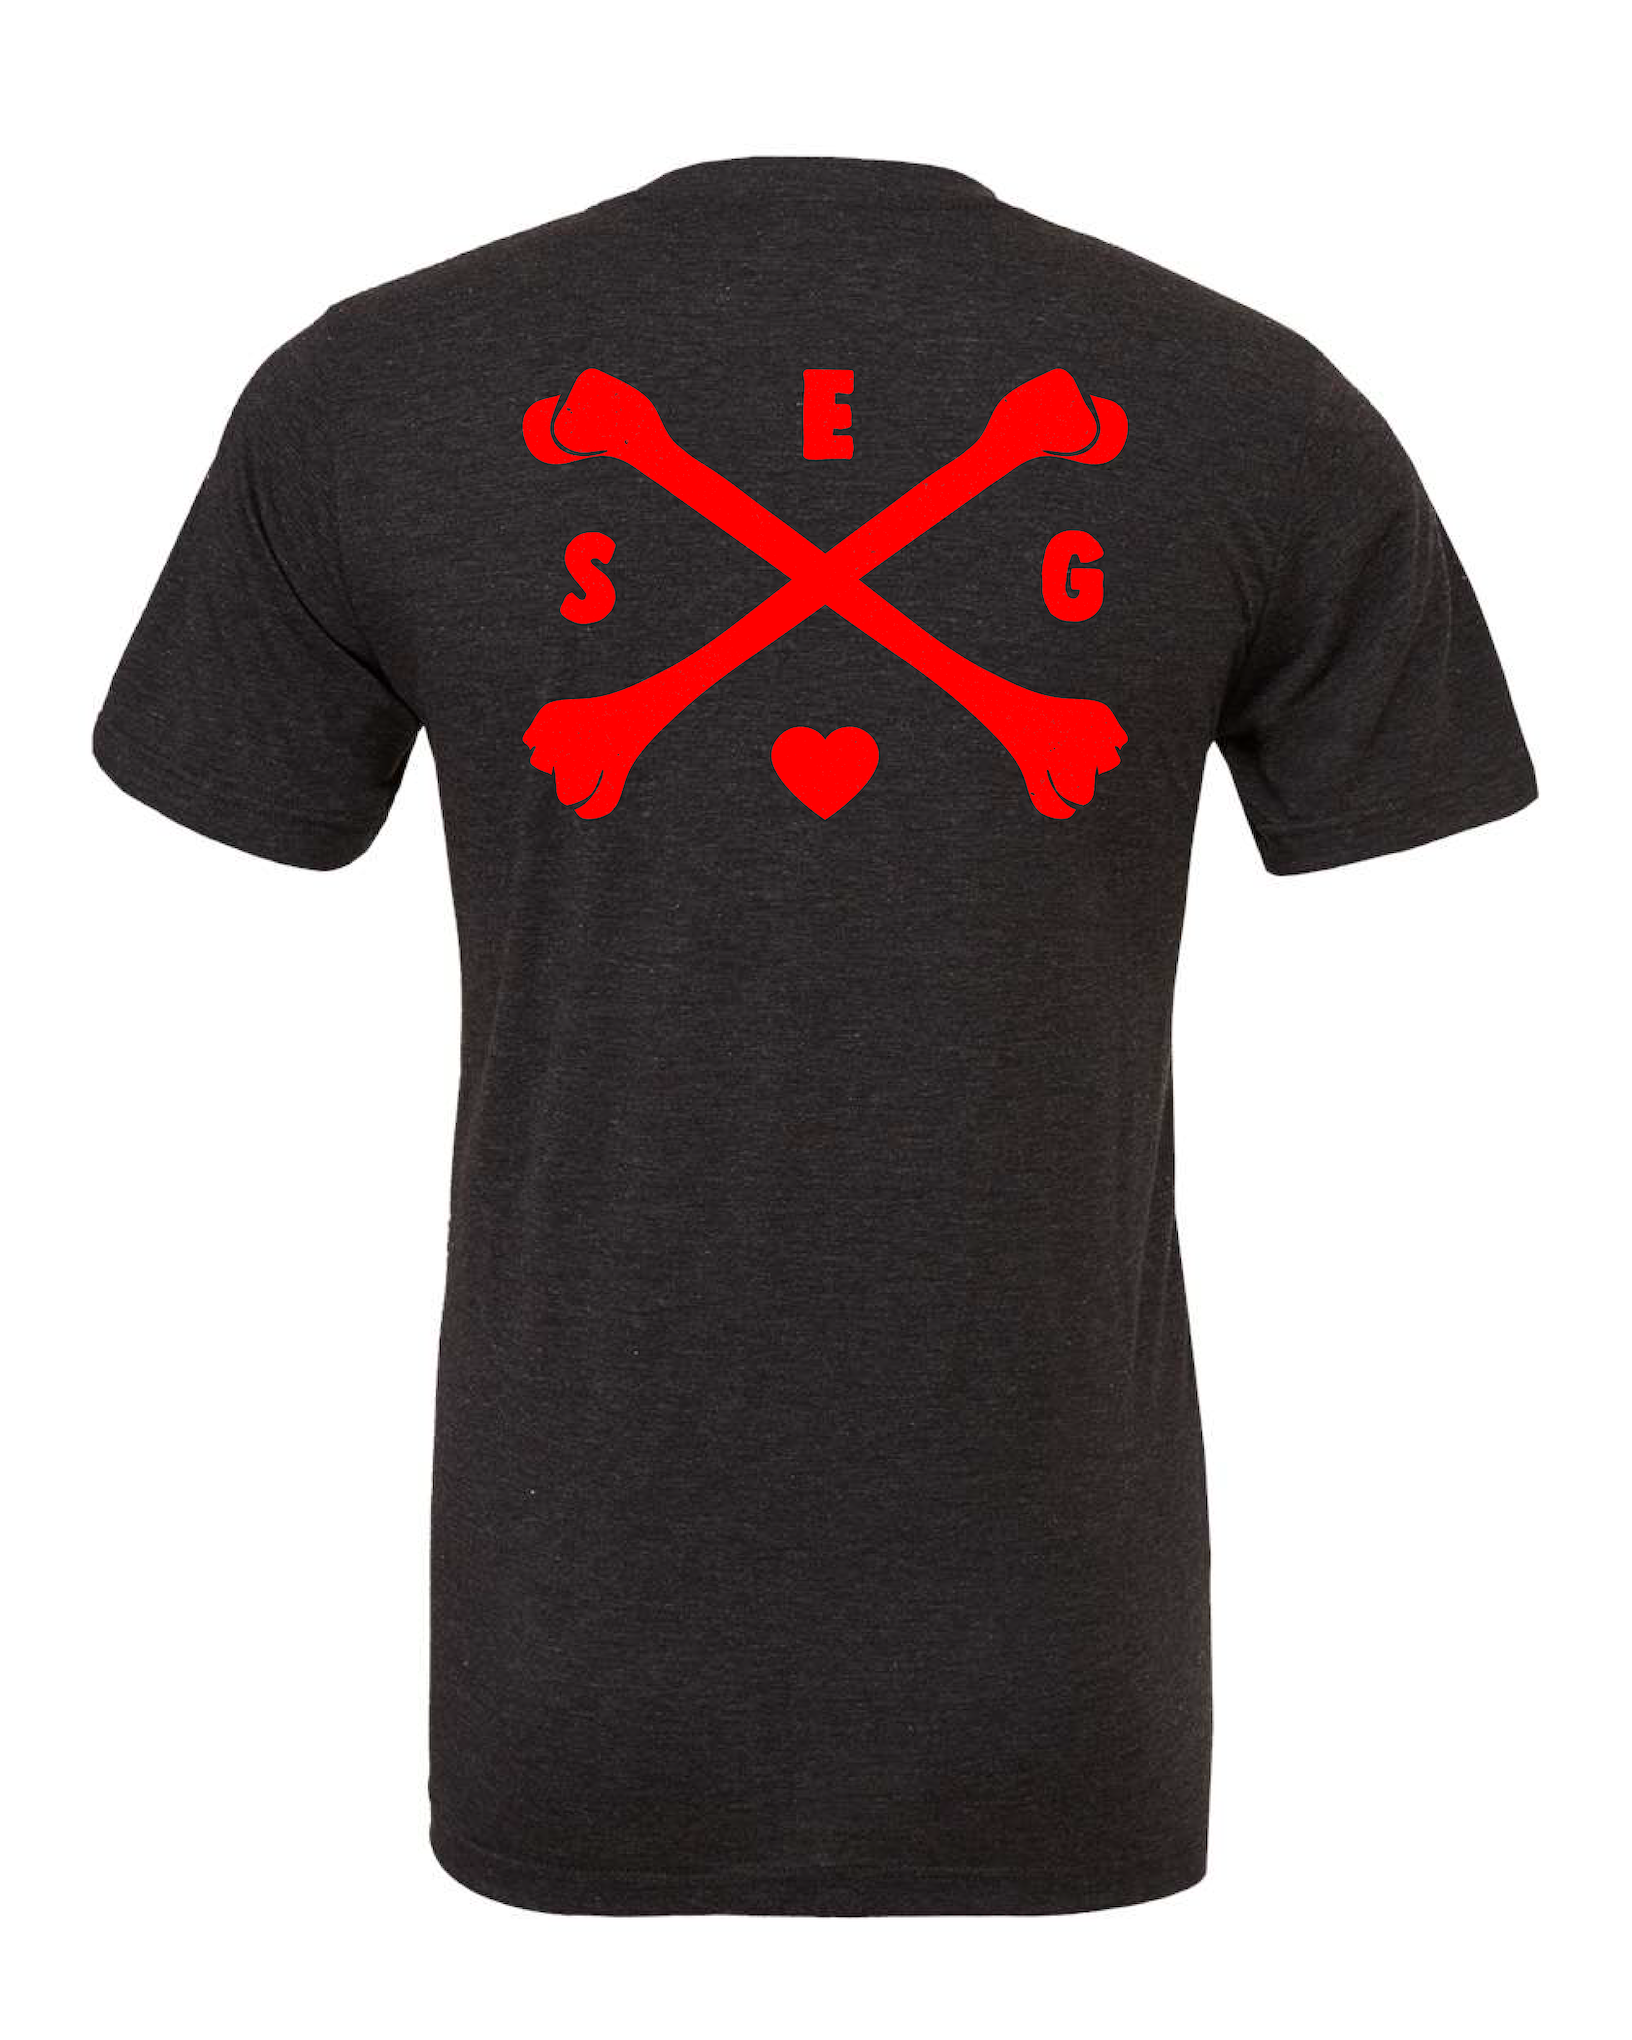 Cross Bones T-shirt - Red Print